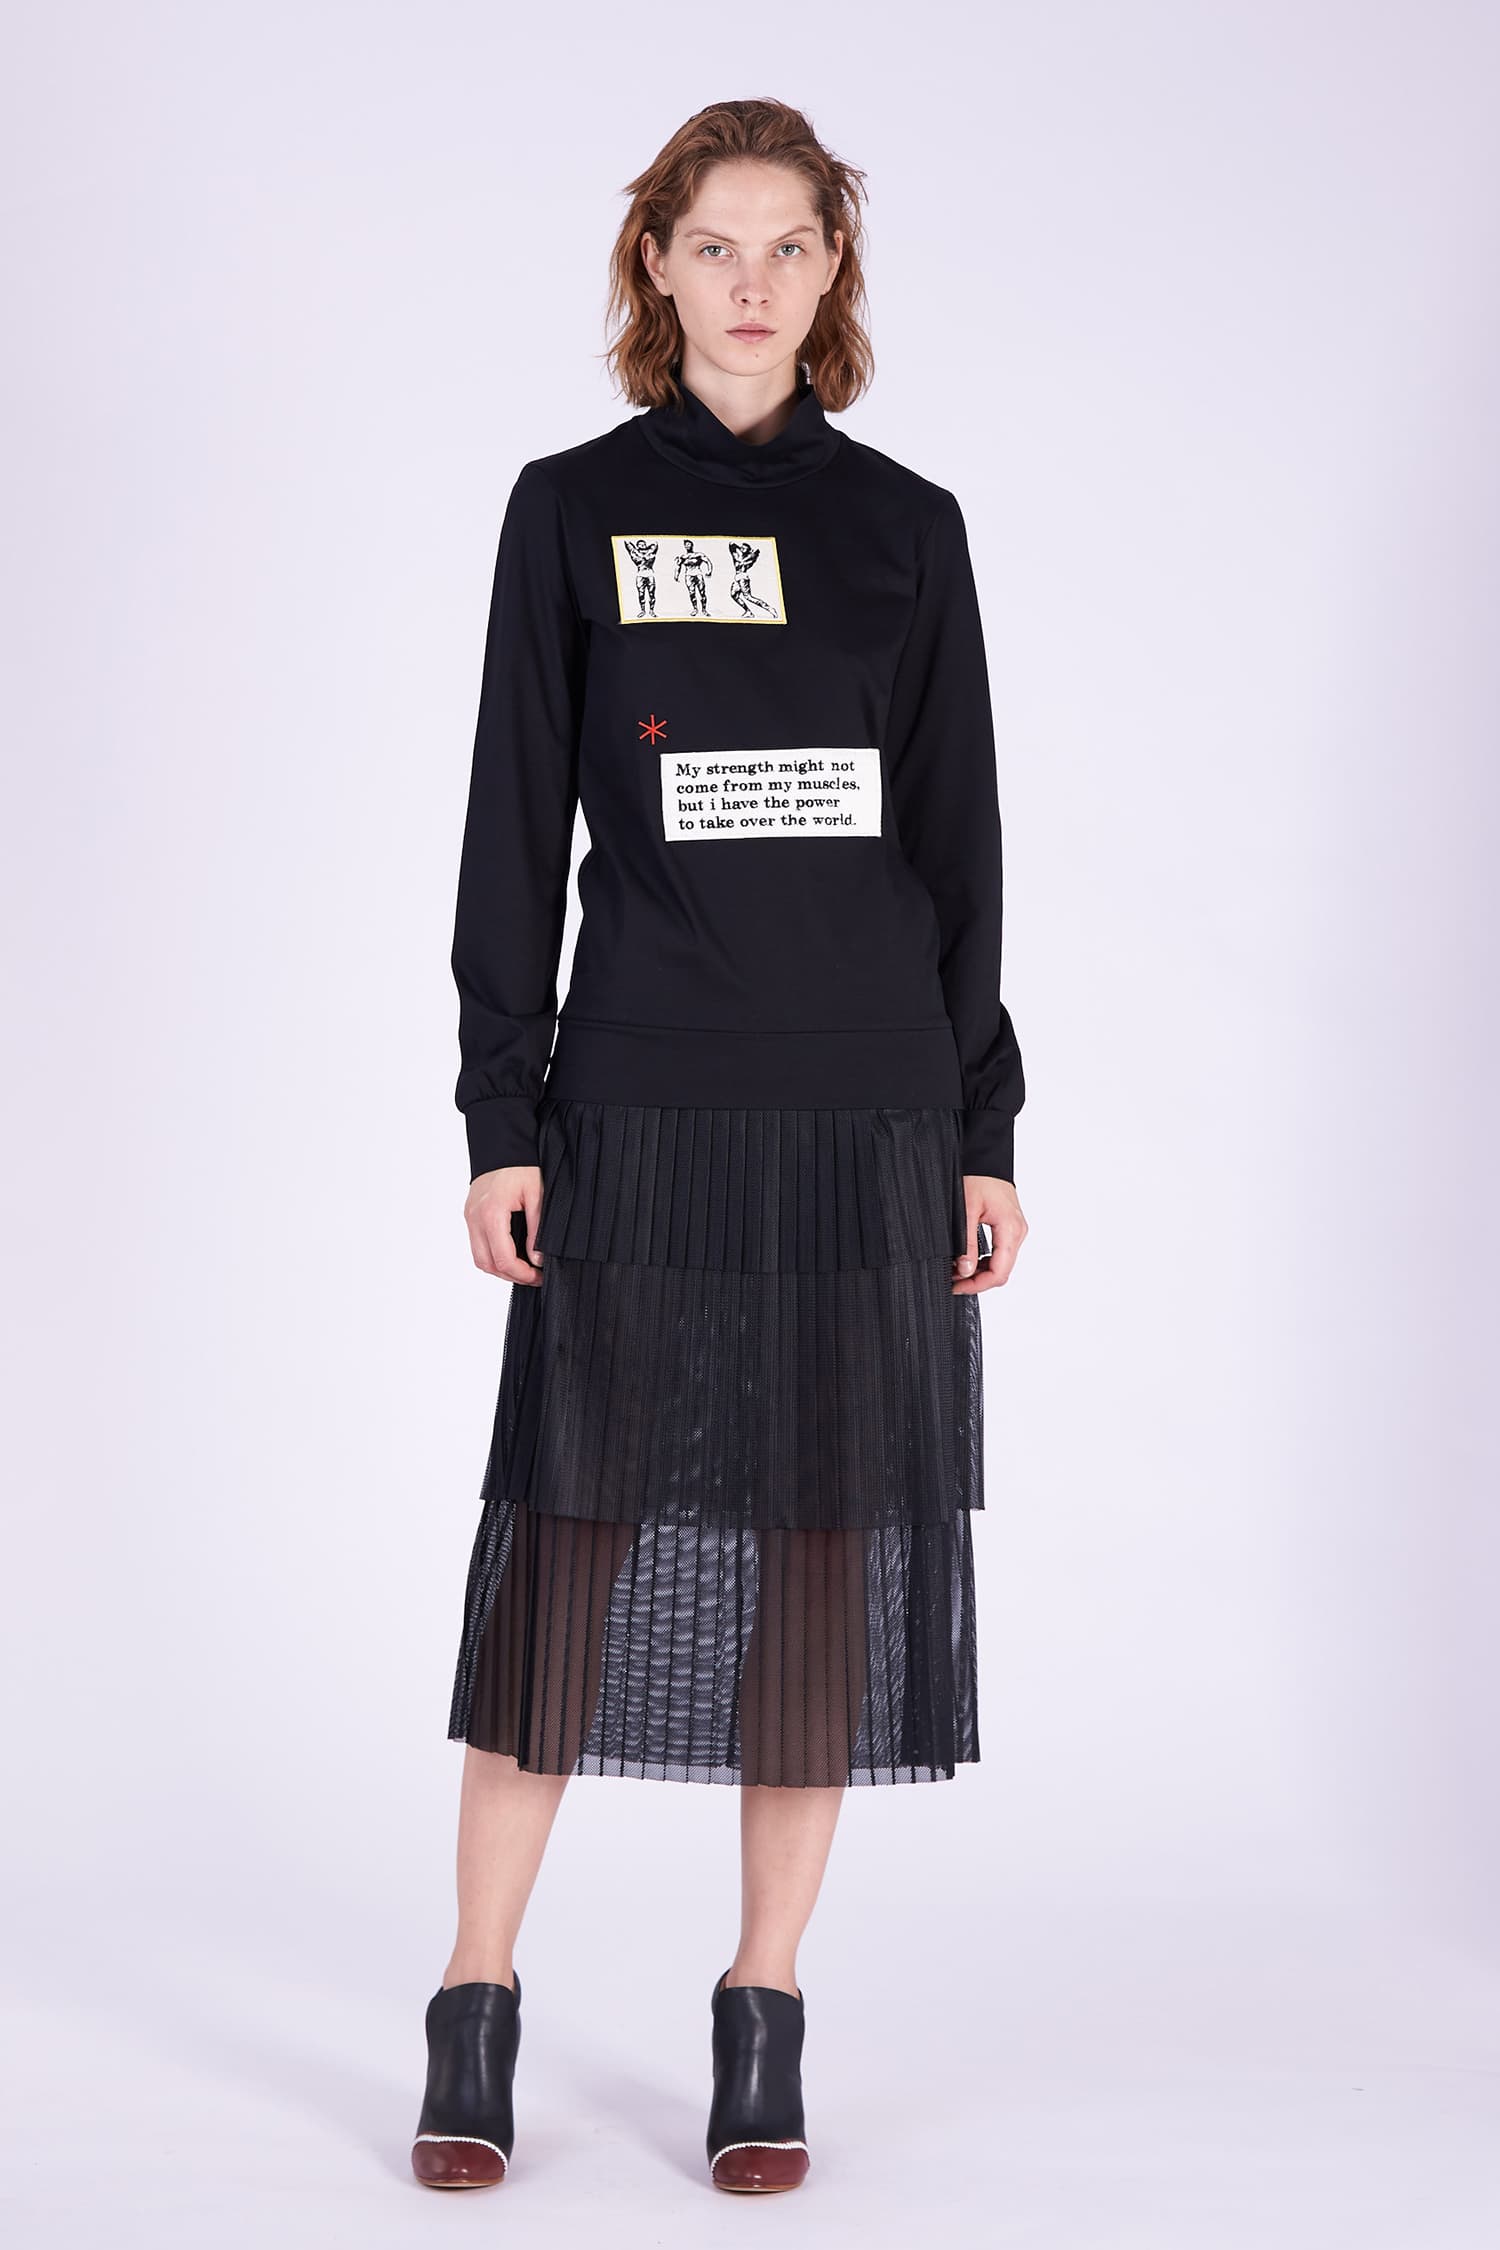 Acephala AW2018-19 Black Cotton Jersey Patch Dress // Czarna Bawełniana Sukienka z Naszywki